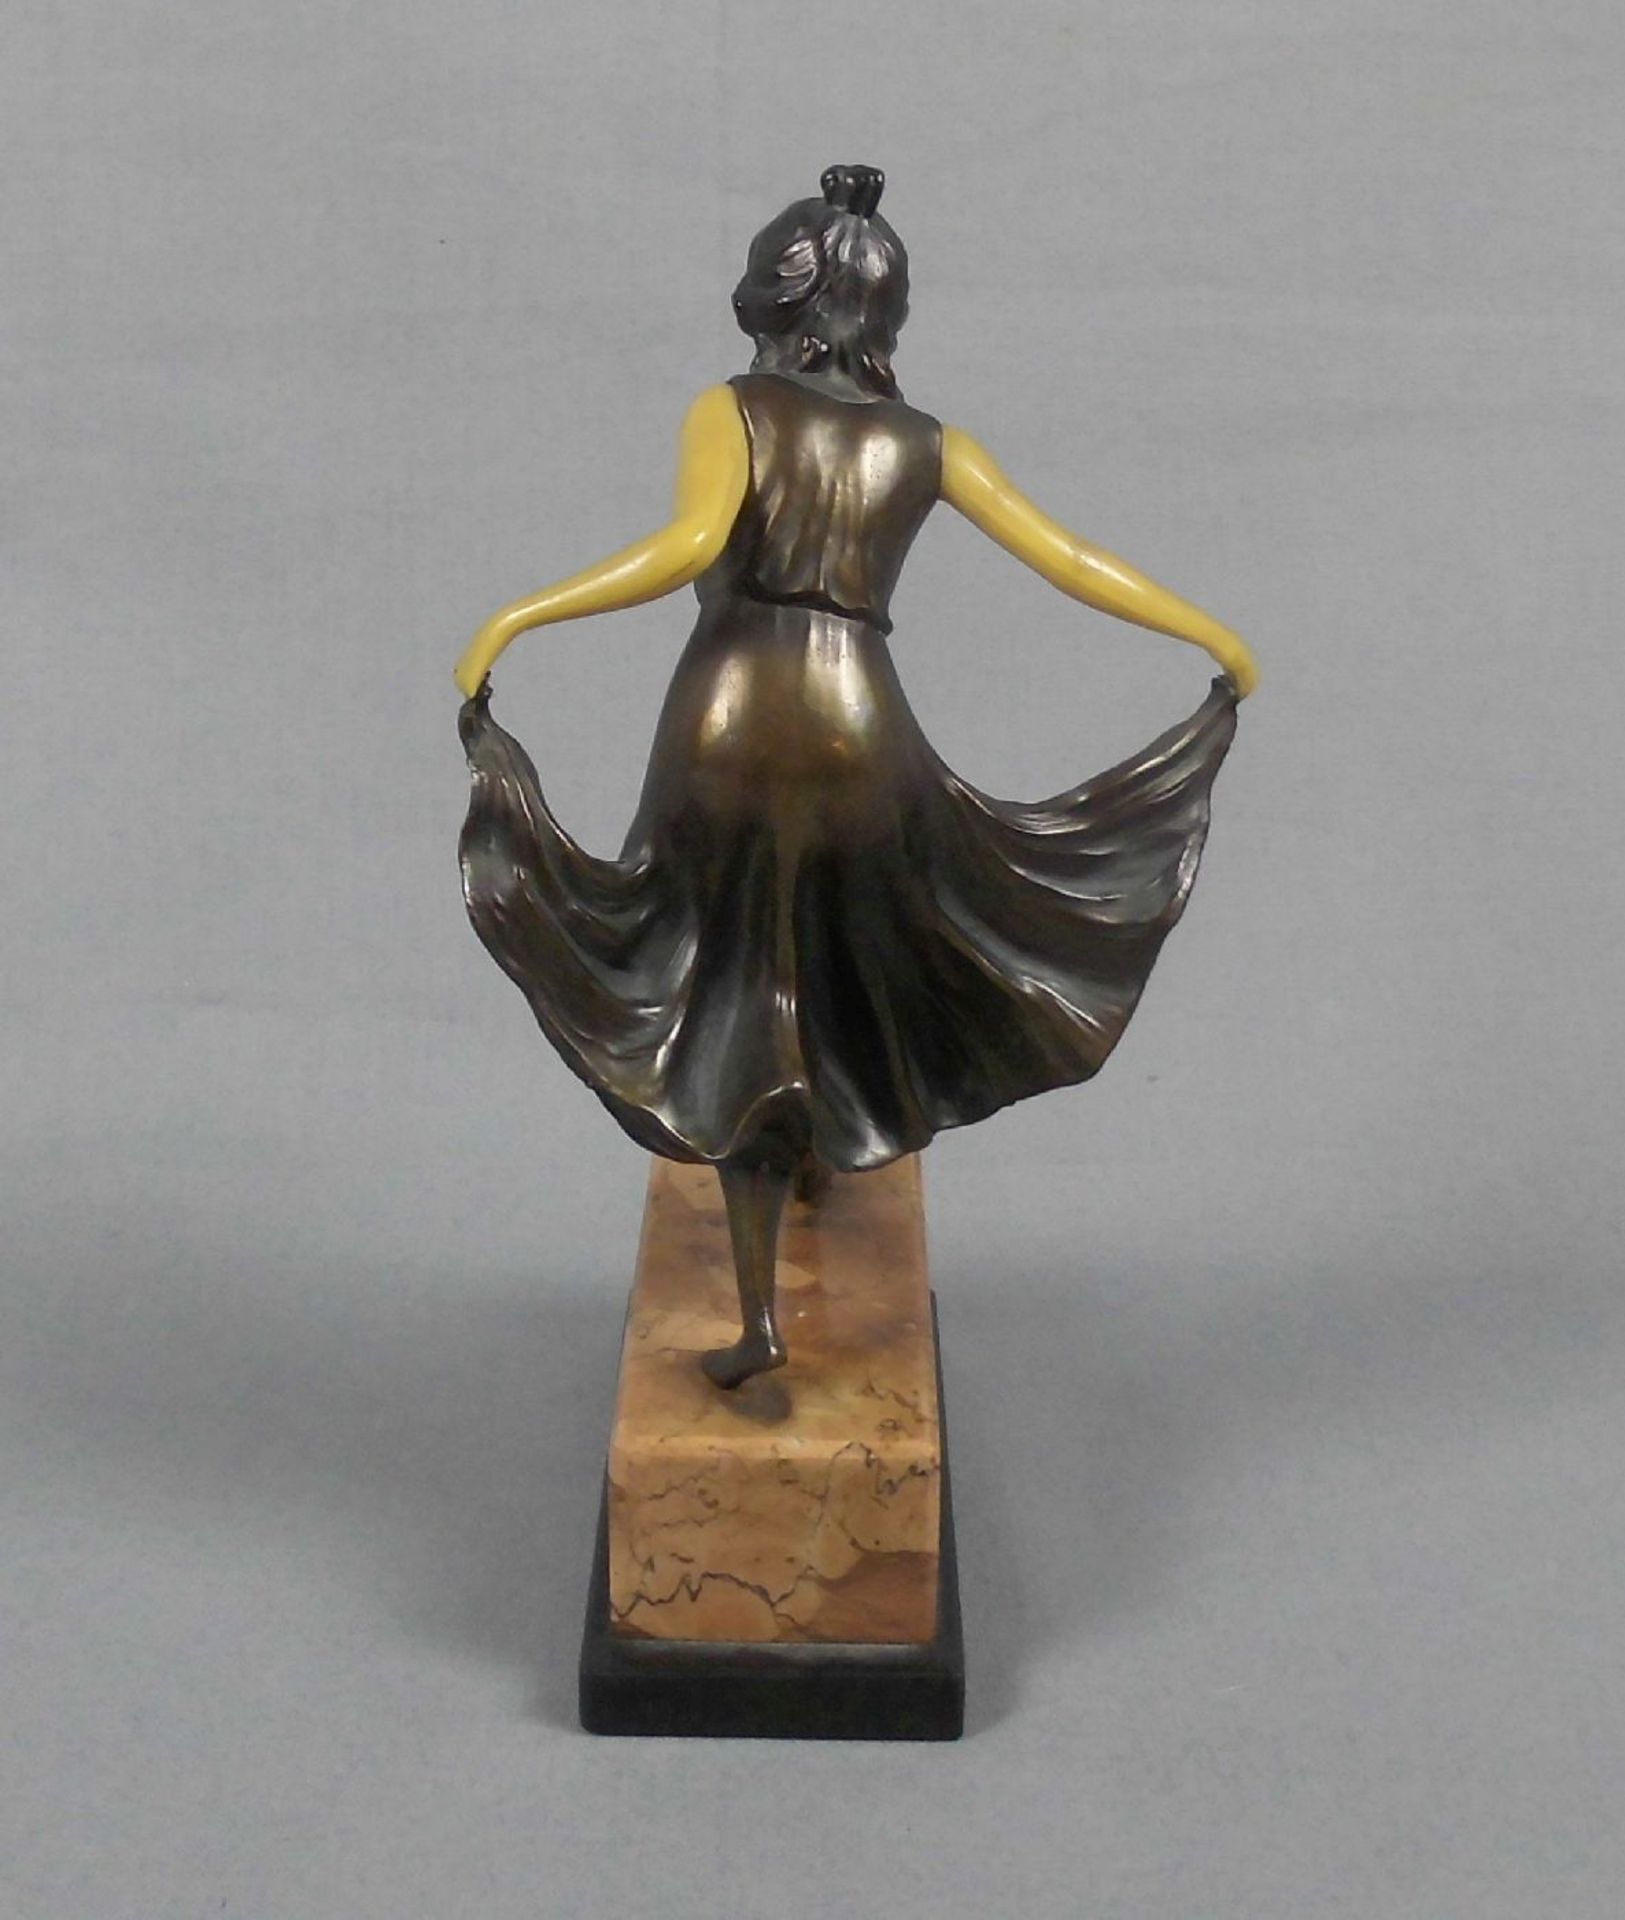 ANONYMUS (Bildhauer des 19./20. Jh.), Skulptur / sculpture: "Tänzerin", Jugendstil, um 1900, - Image 3 of 3